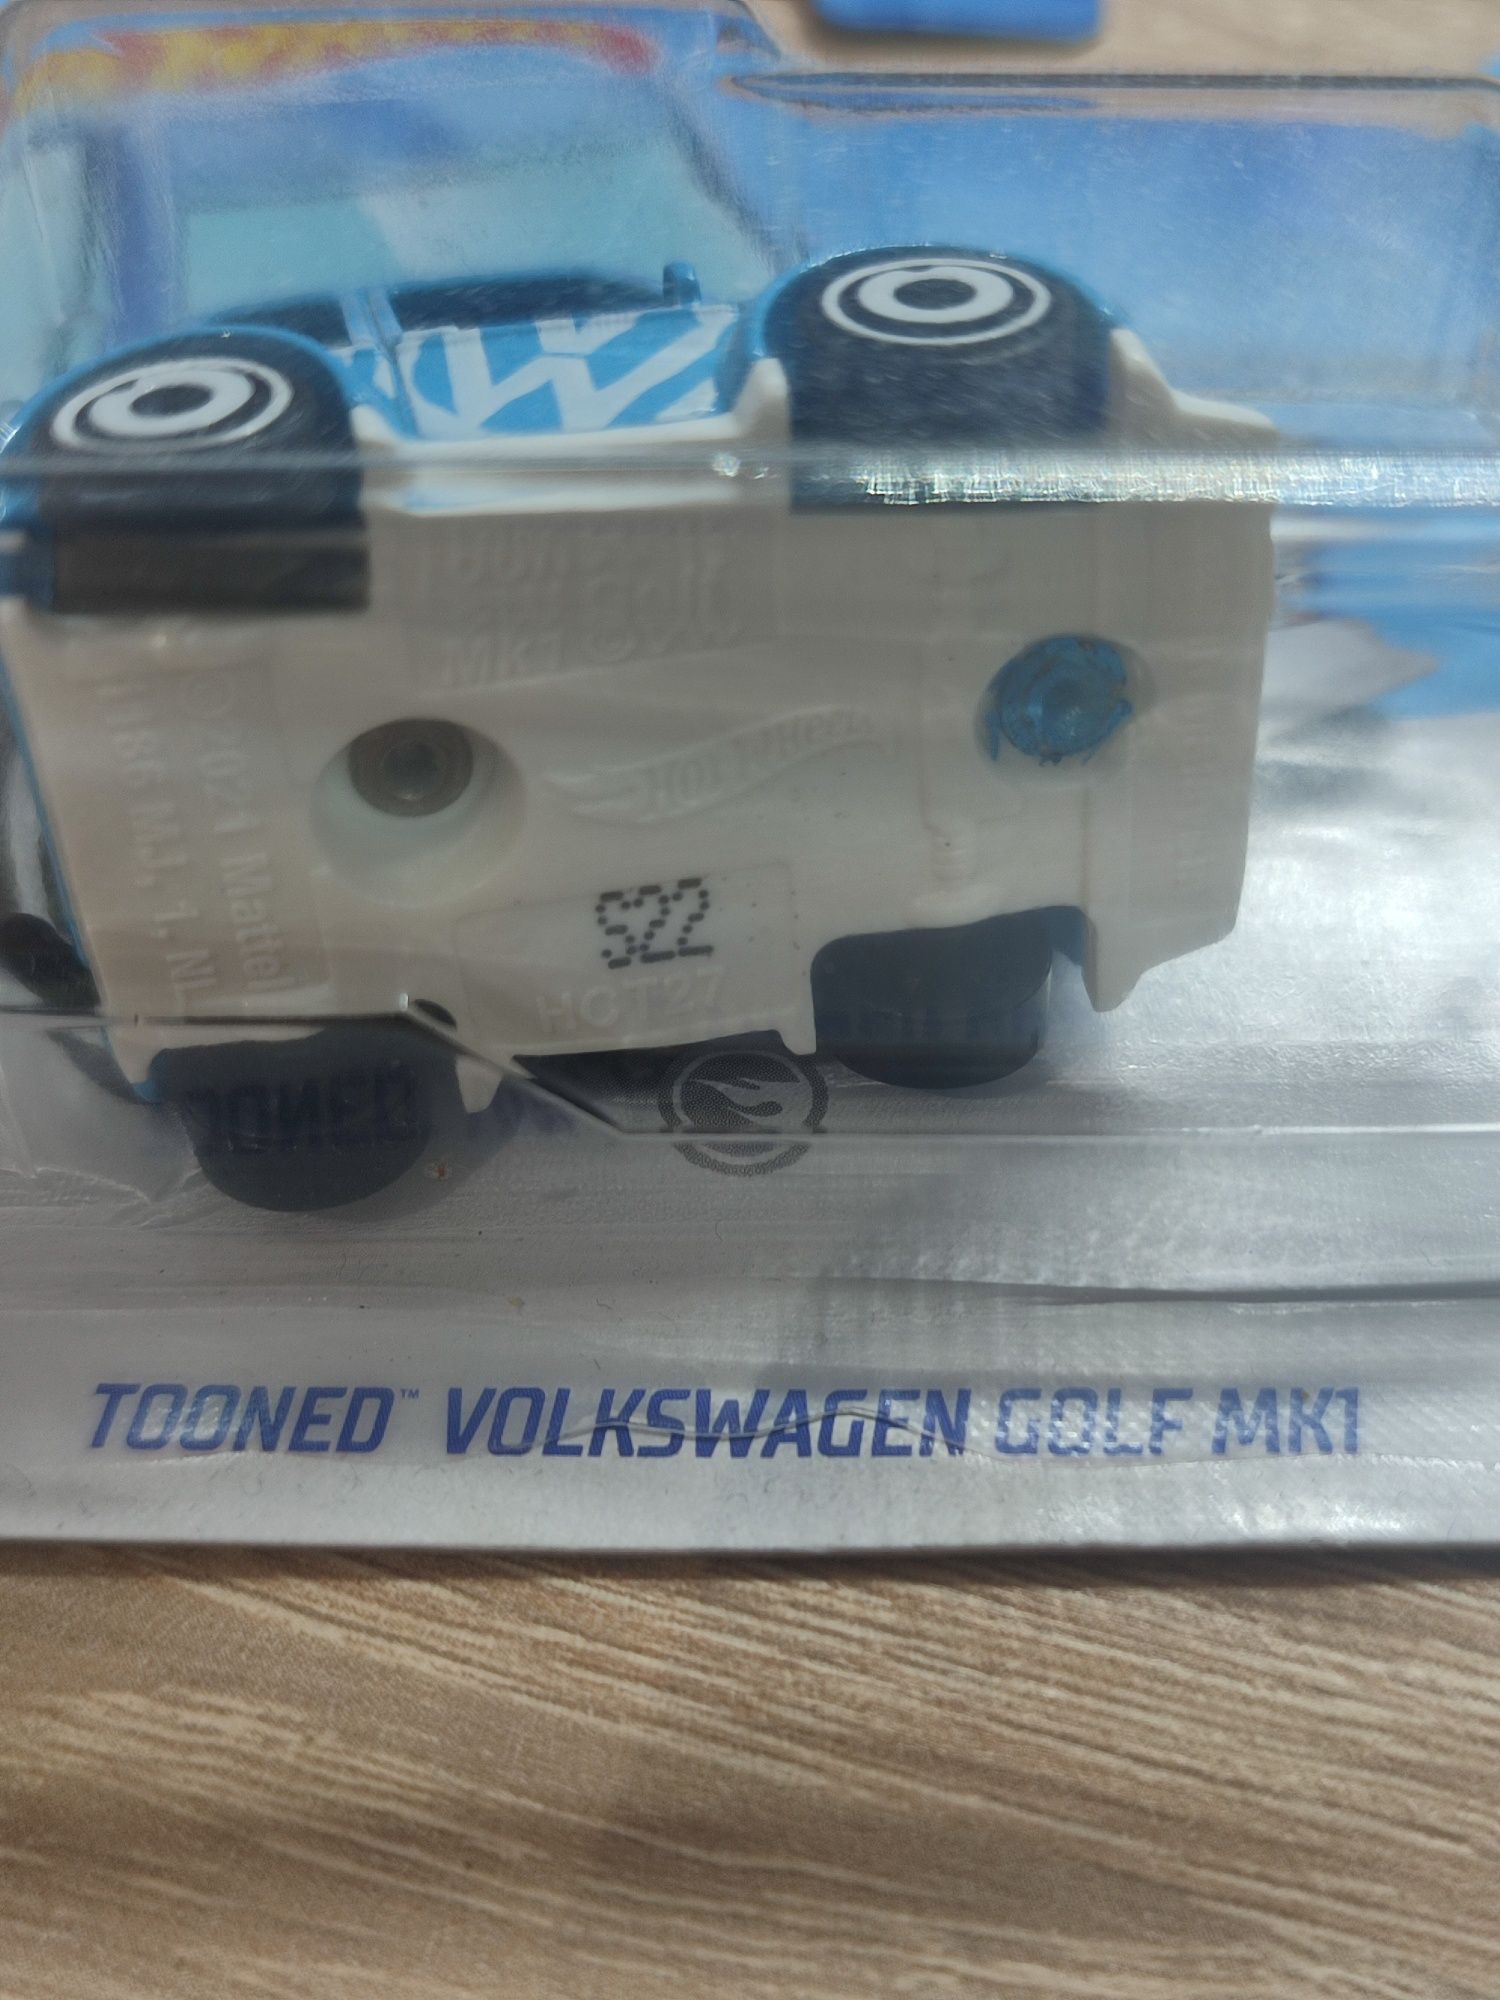 HOT WHEELS Tooned Volkswagen Golf Mk1 TH